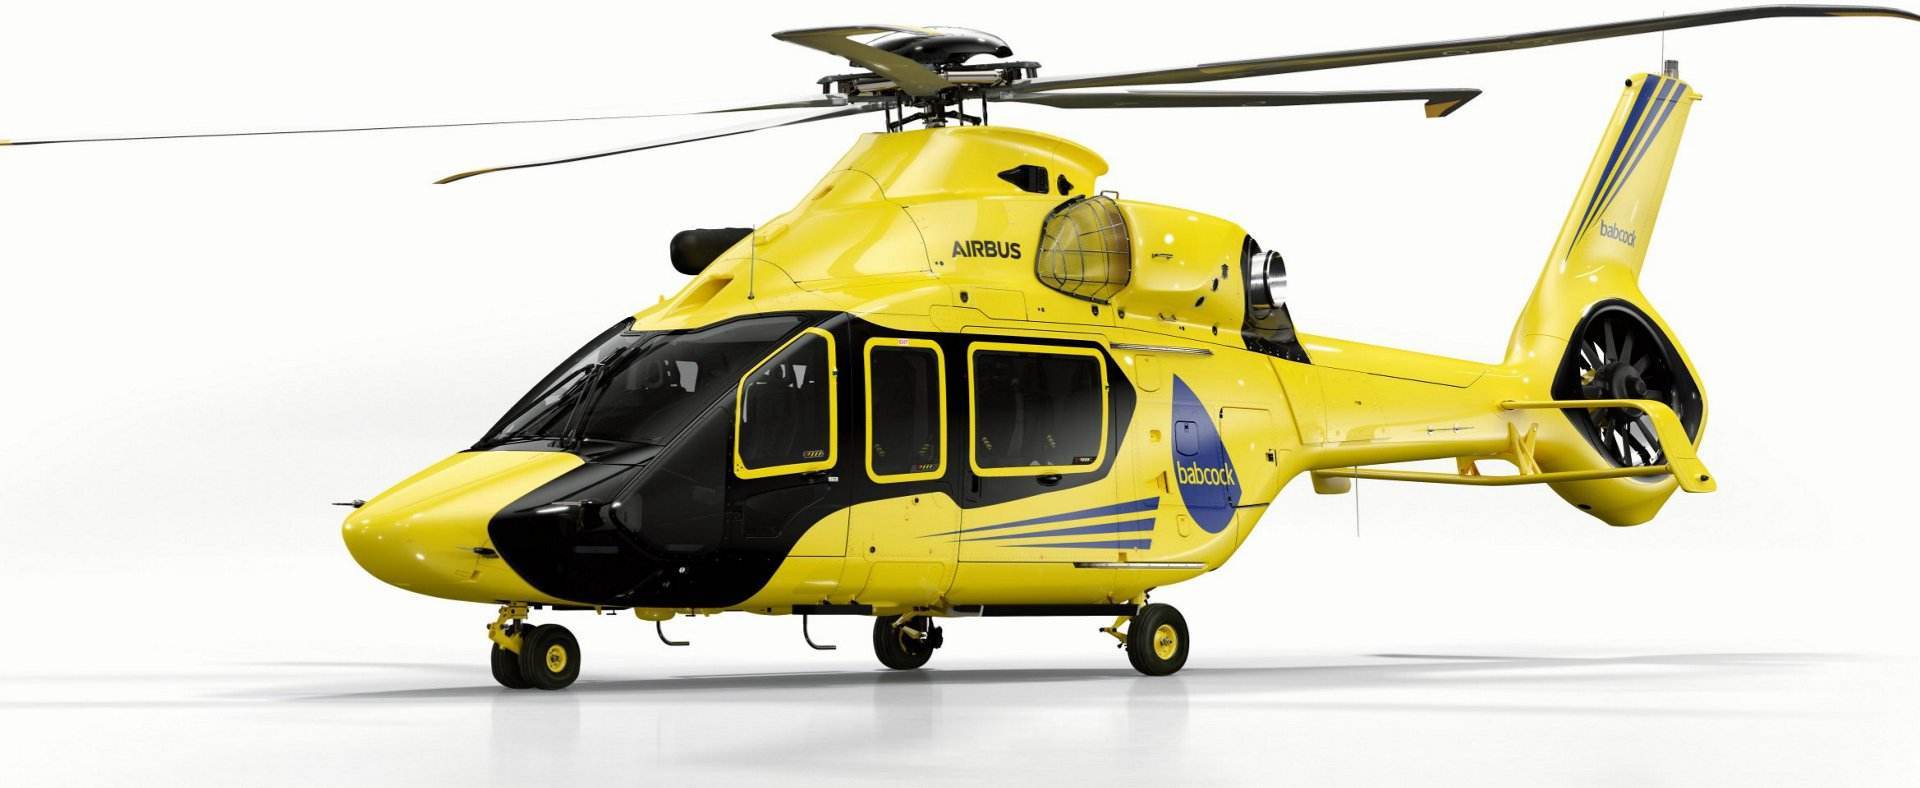 世界上第一架!全复合材料民用直升机;h160获欧洲航空安全局认证